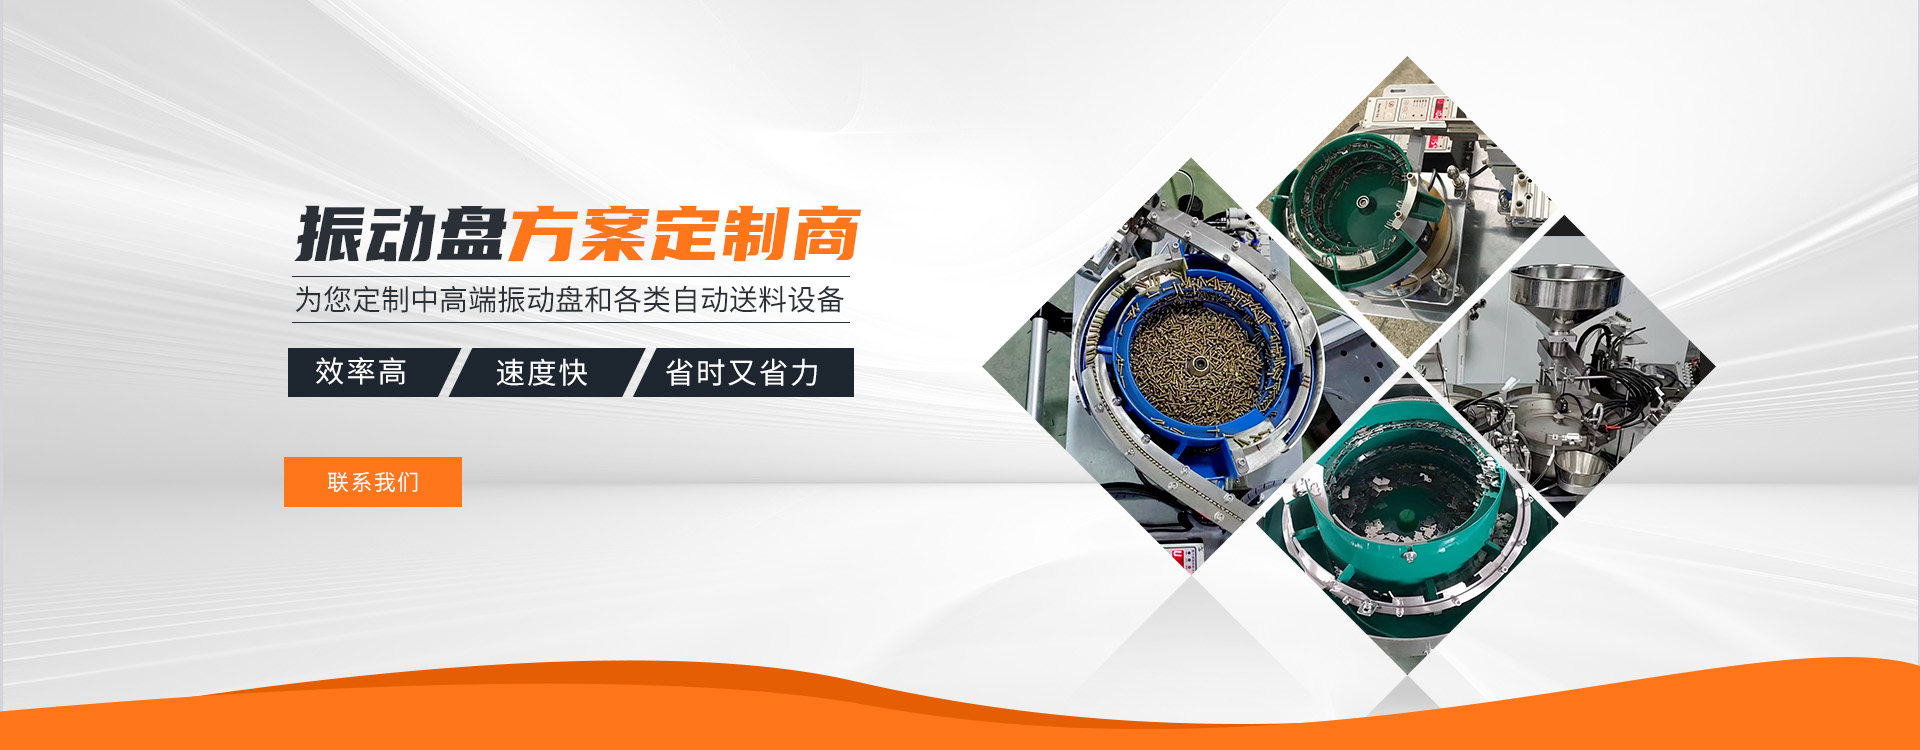 深圳市恒鑫盛自动化设备有限公司-专注于精密振动盘定制